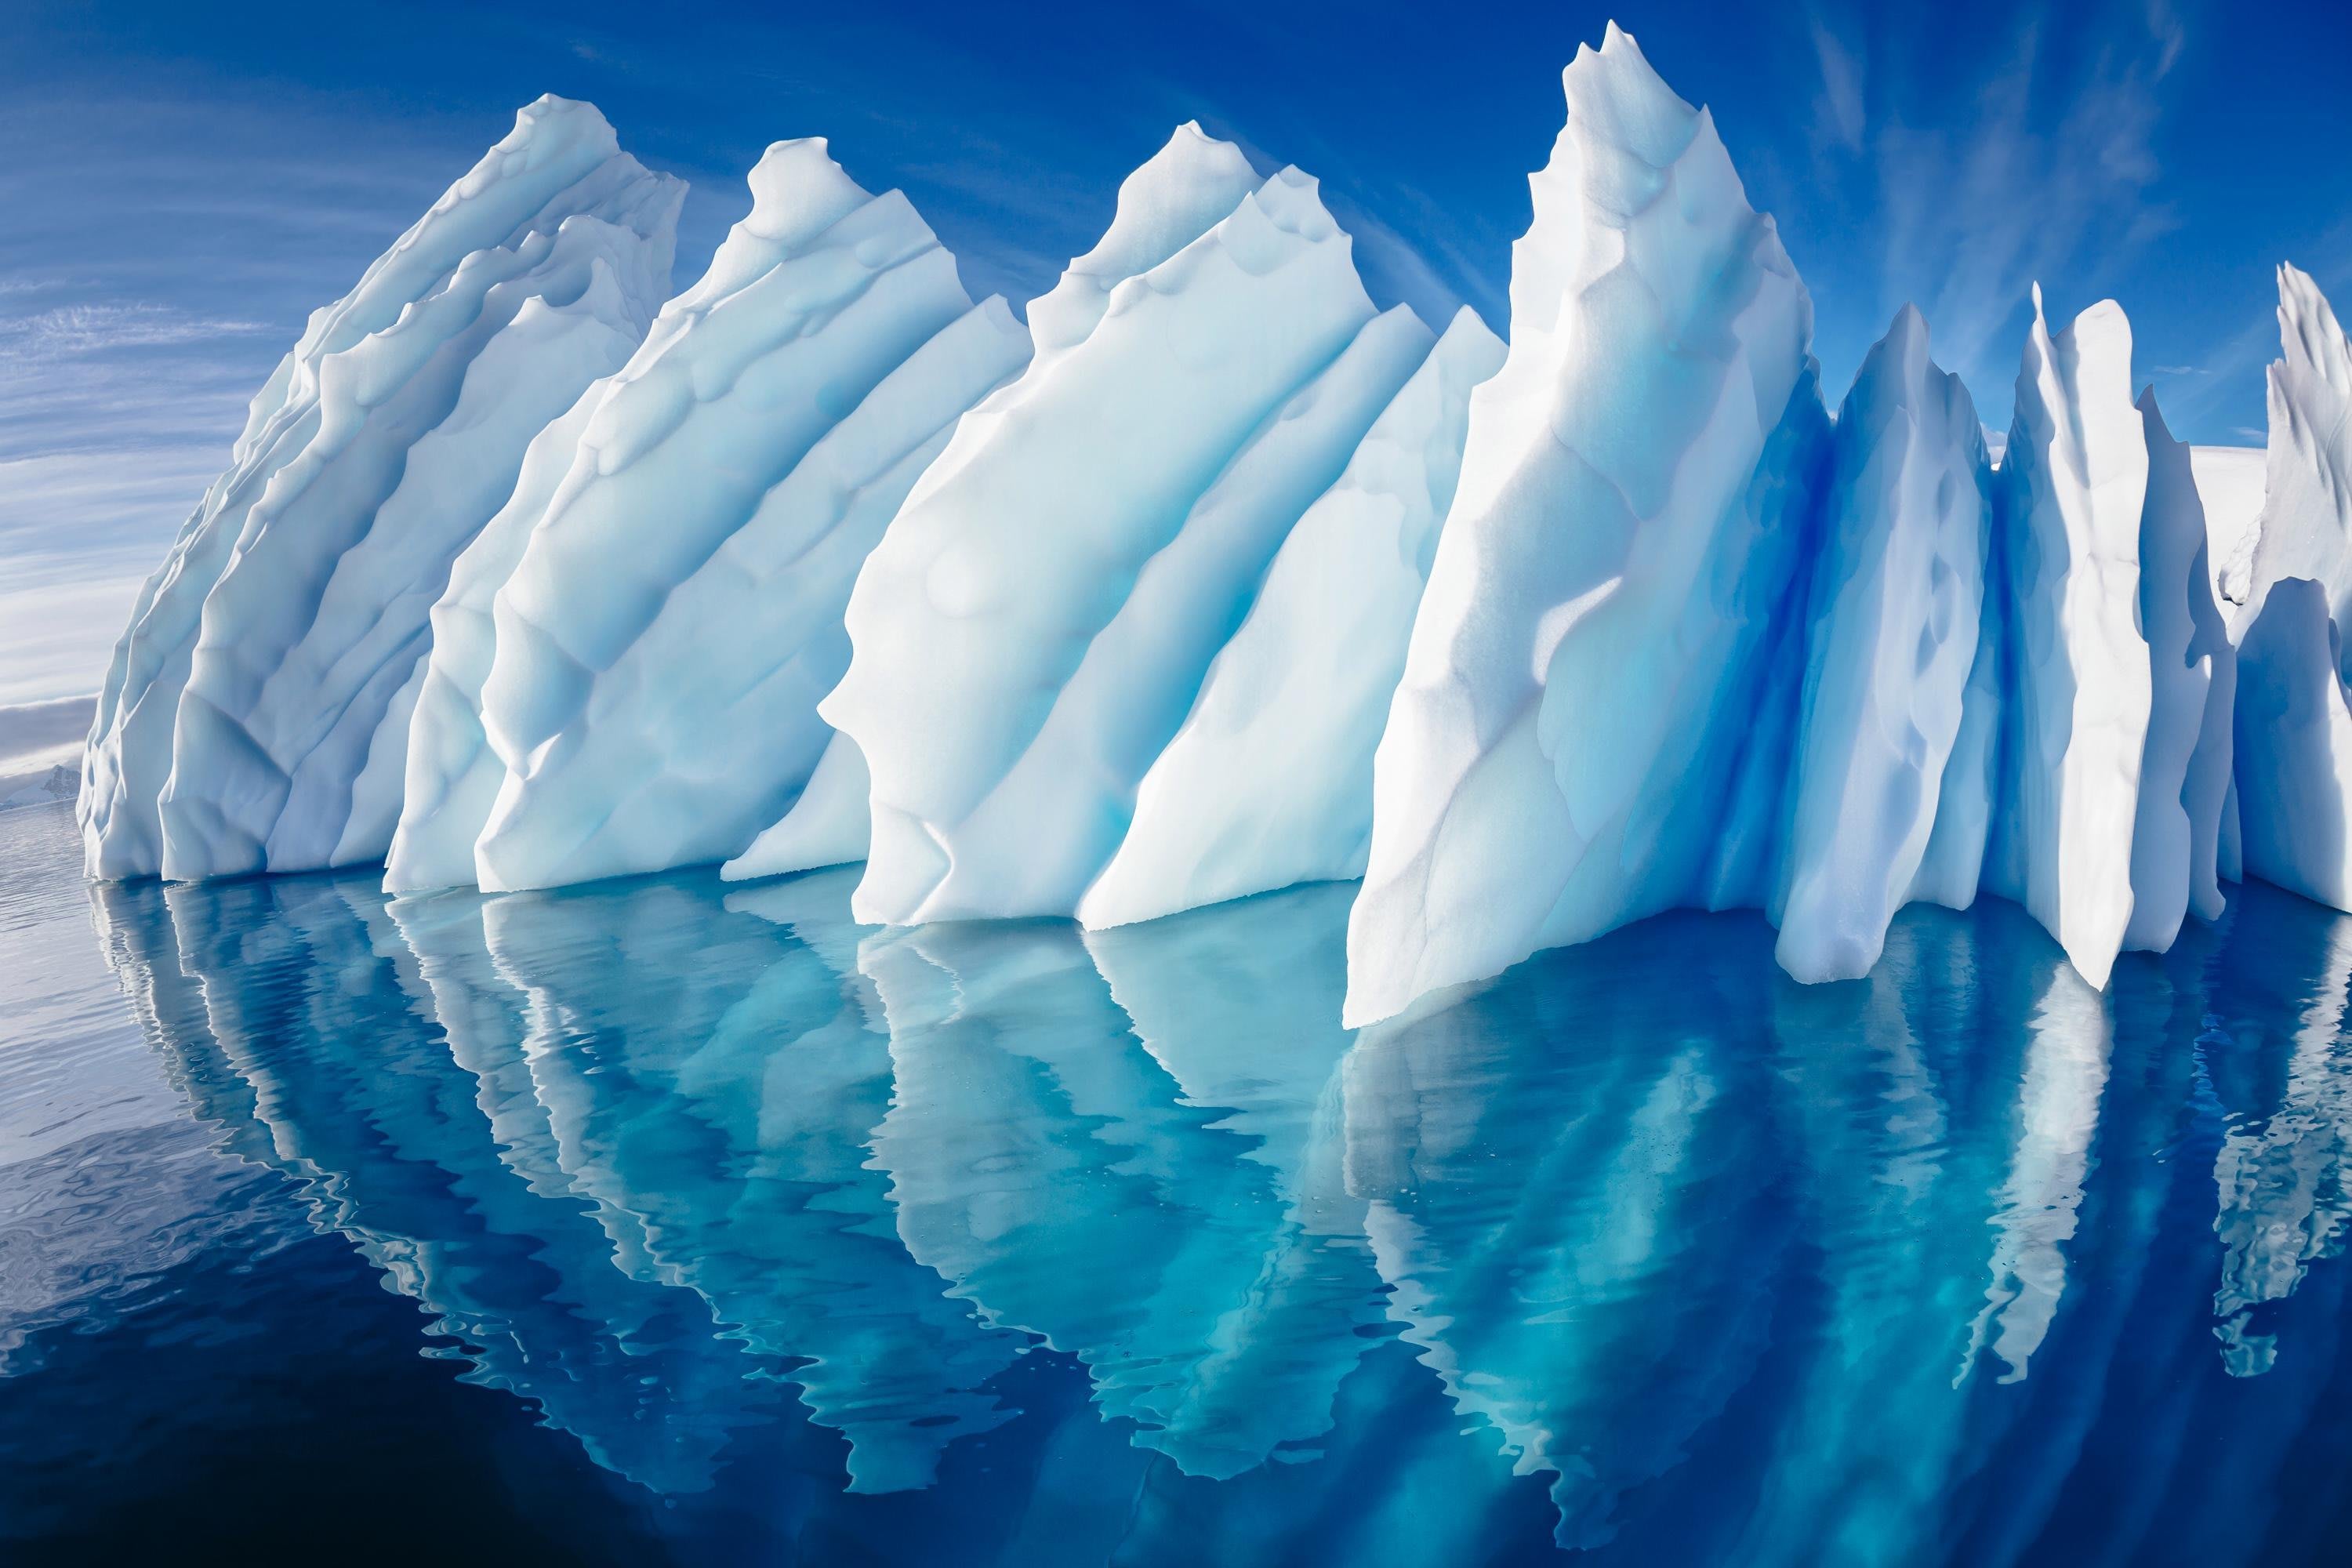 Океан покрытый льдом. Ледники айсберги Антарктиды. Лед Айсберг Арктика Антарктида. Гавань Парадайз в Антарктиде. Гидросфера Айсберг.